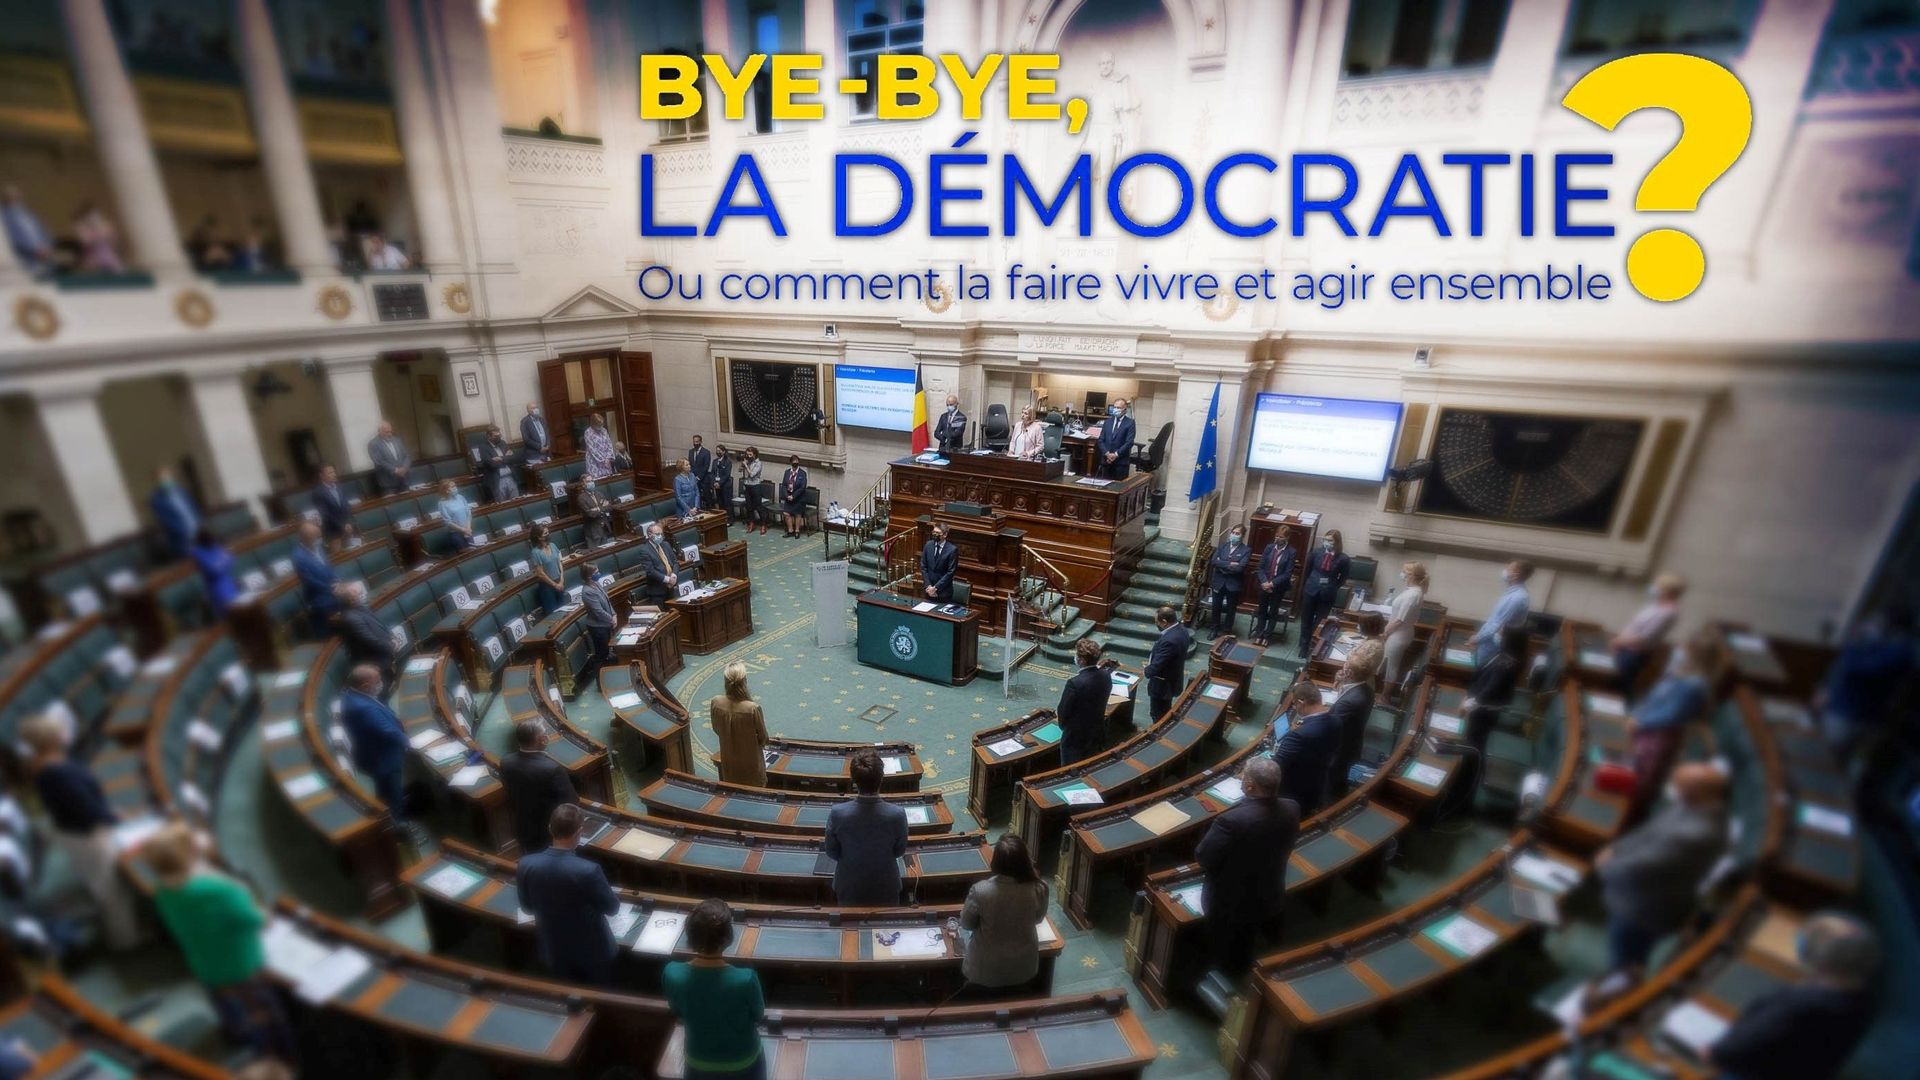 Sondage RTBF : un quart des Belges veulent la fin de notre démocratie parlementaire